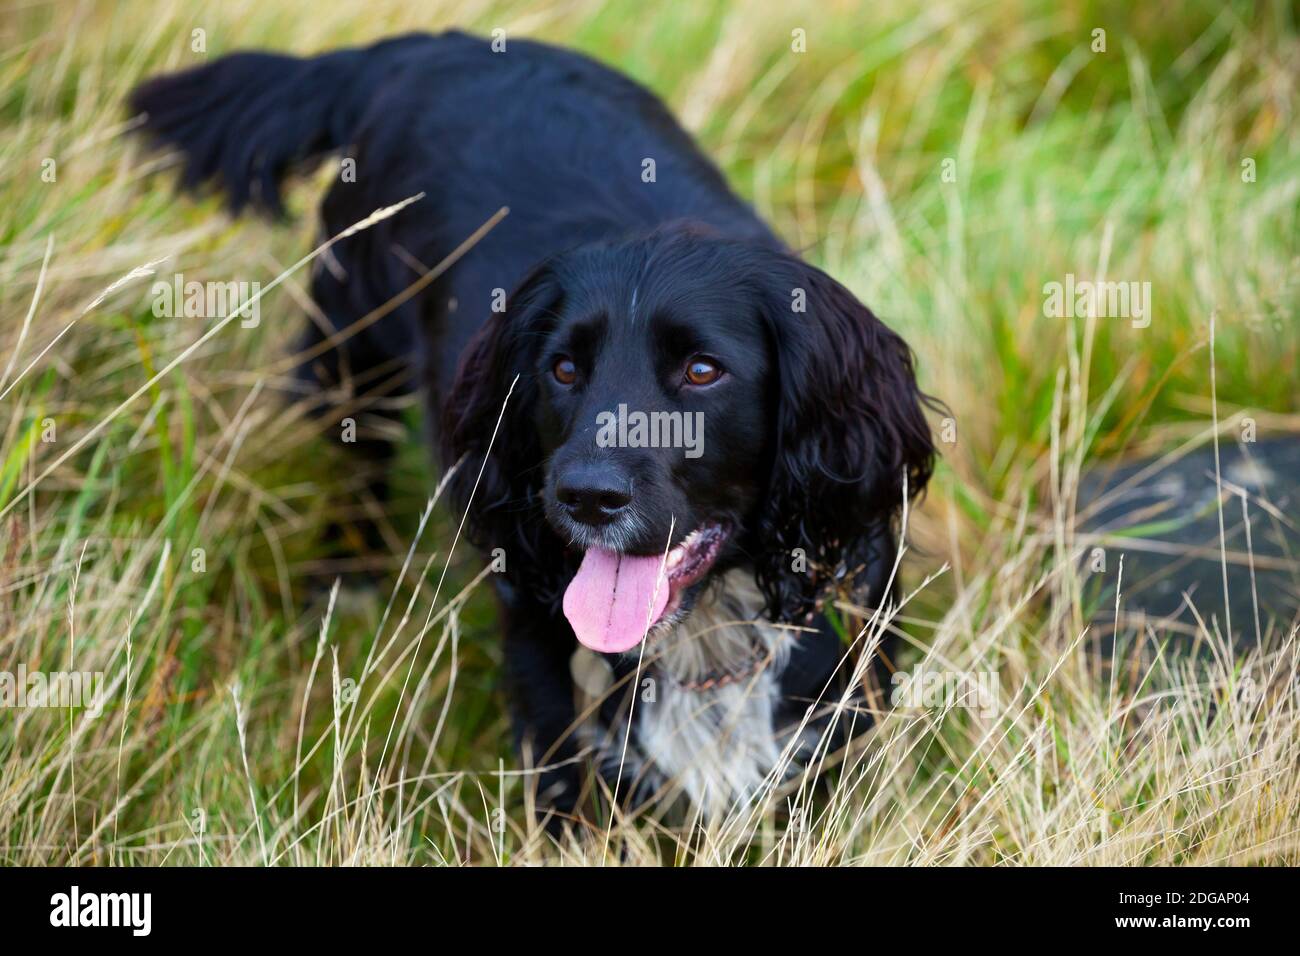 Cocker lavoro spaniel cane con capelli neri e petto bianco giacente in erba guardando in su con l'espressione di allarme sul suo viso. Foto Stock